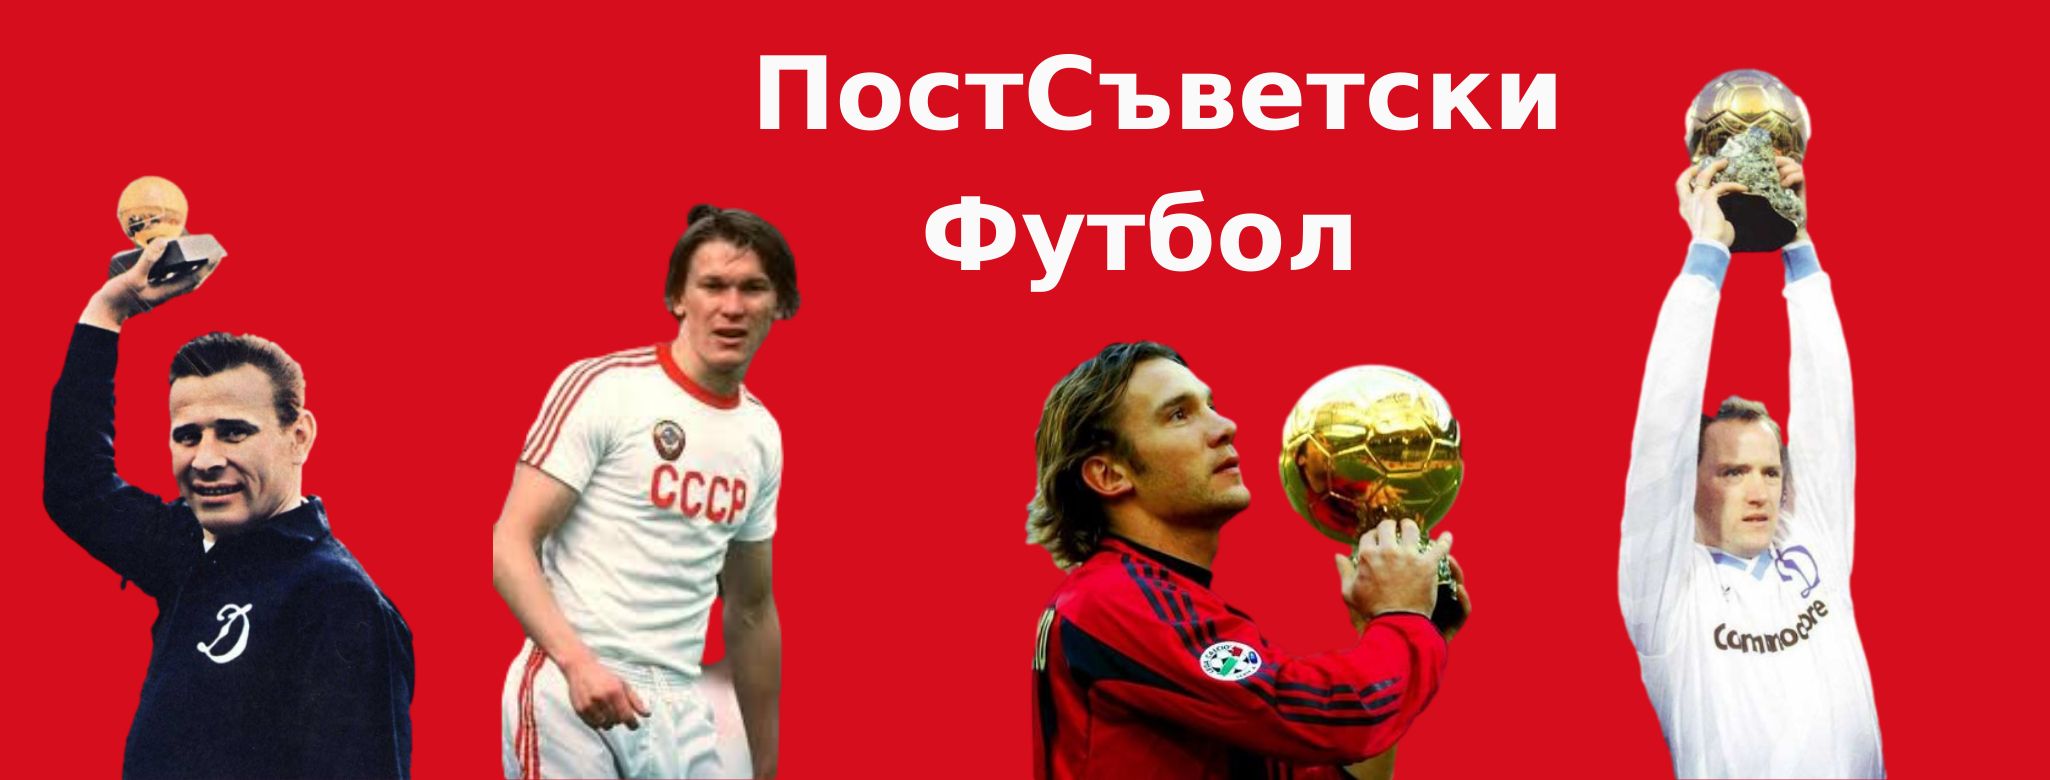 Впечатления болгарских болельщиков о российском футболе